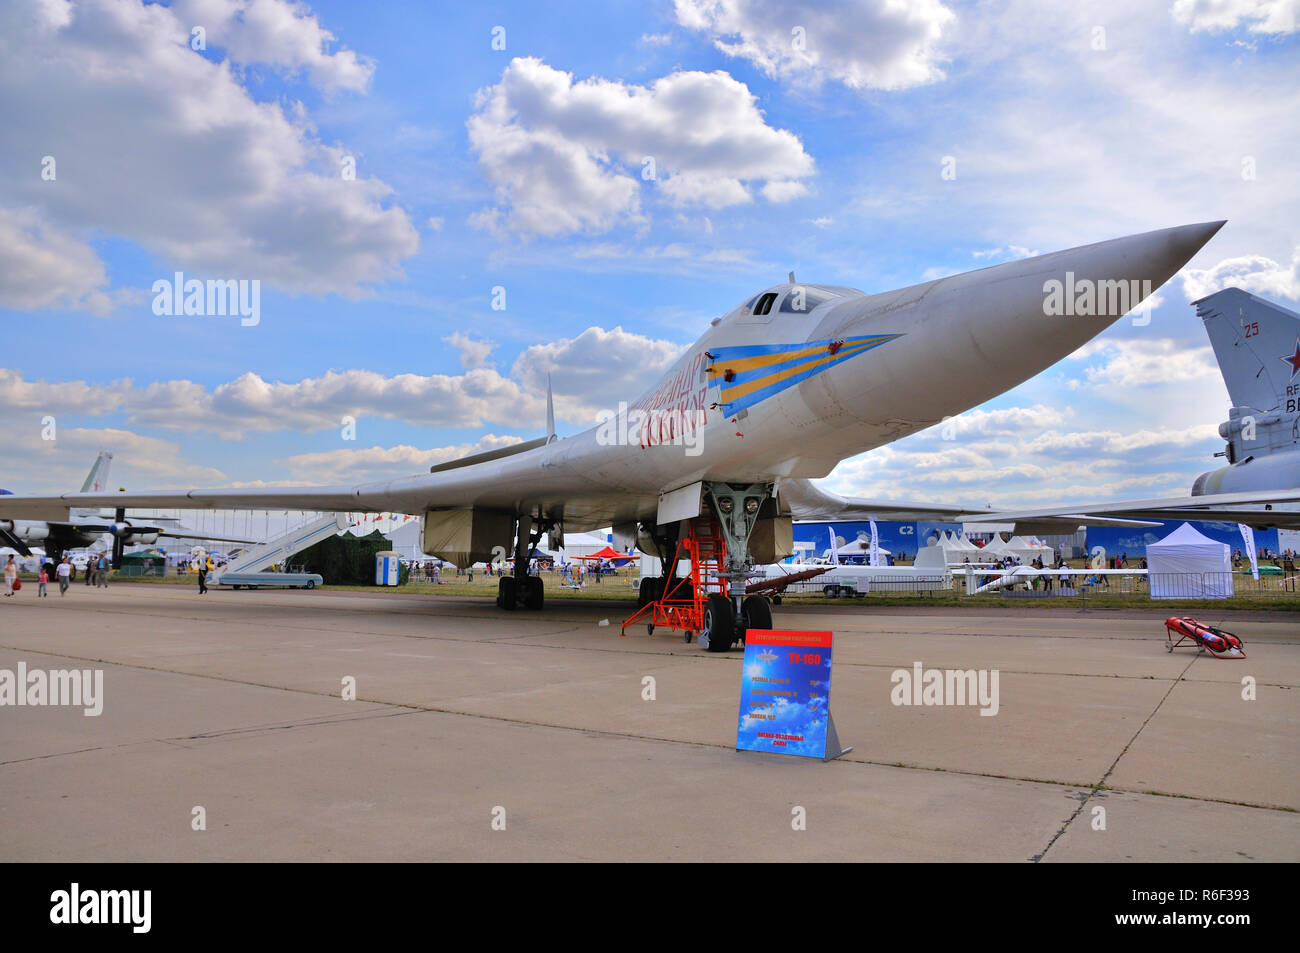 Moscú, Rusia - AUG 2015: heavy bombardero estratégico Tu-160 Blackjack presentados en la 12ª MAKS-2015 La aviación internacional y el espectáculo Espacio, el 28 de agosto Foto de stock